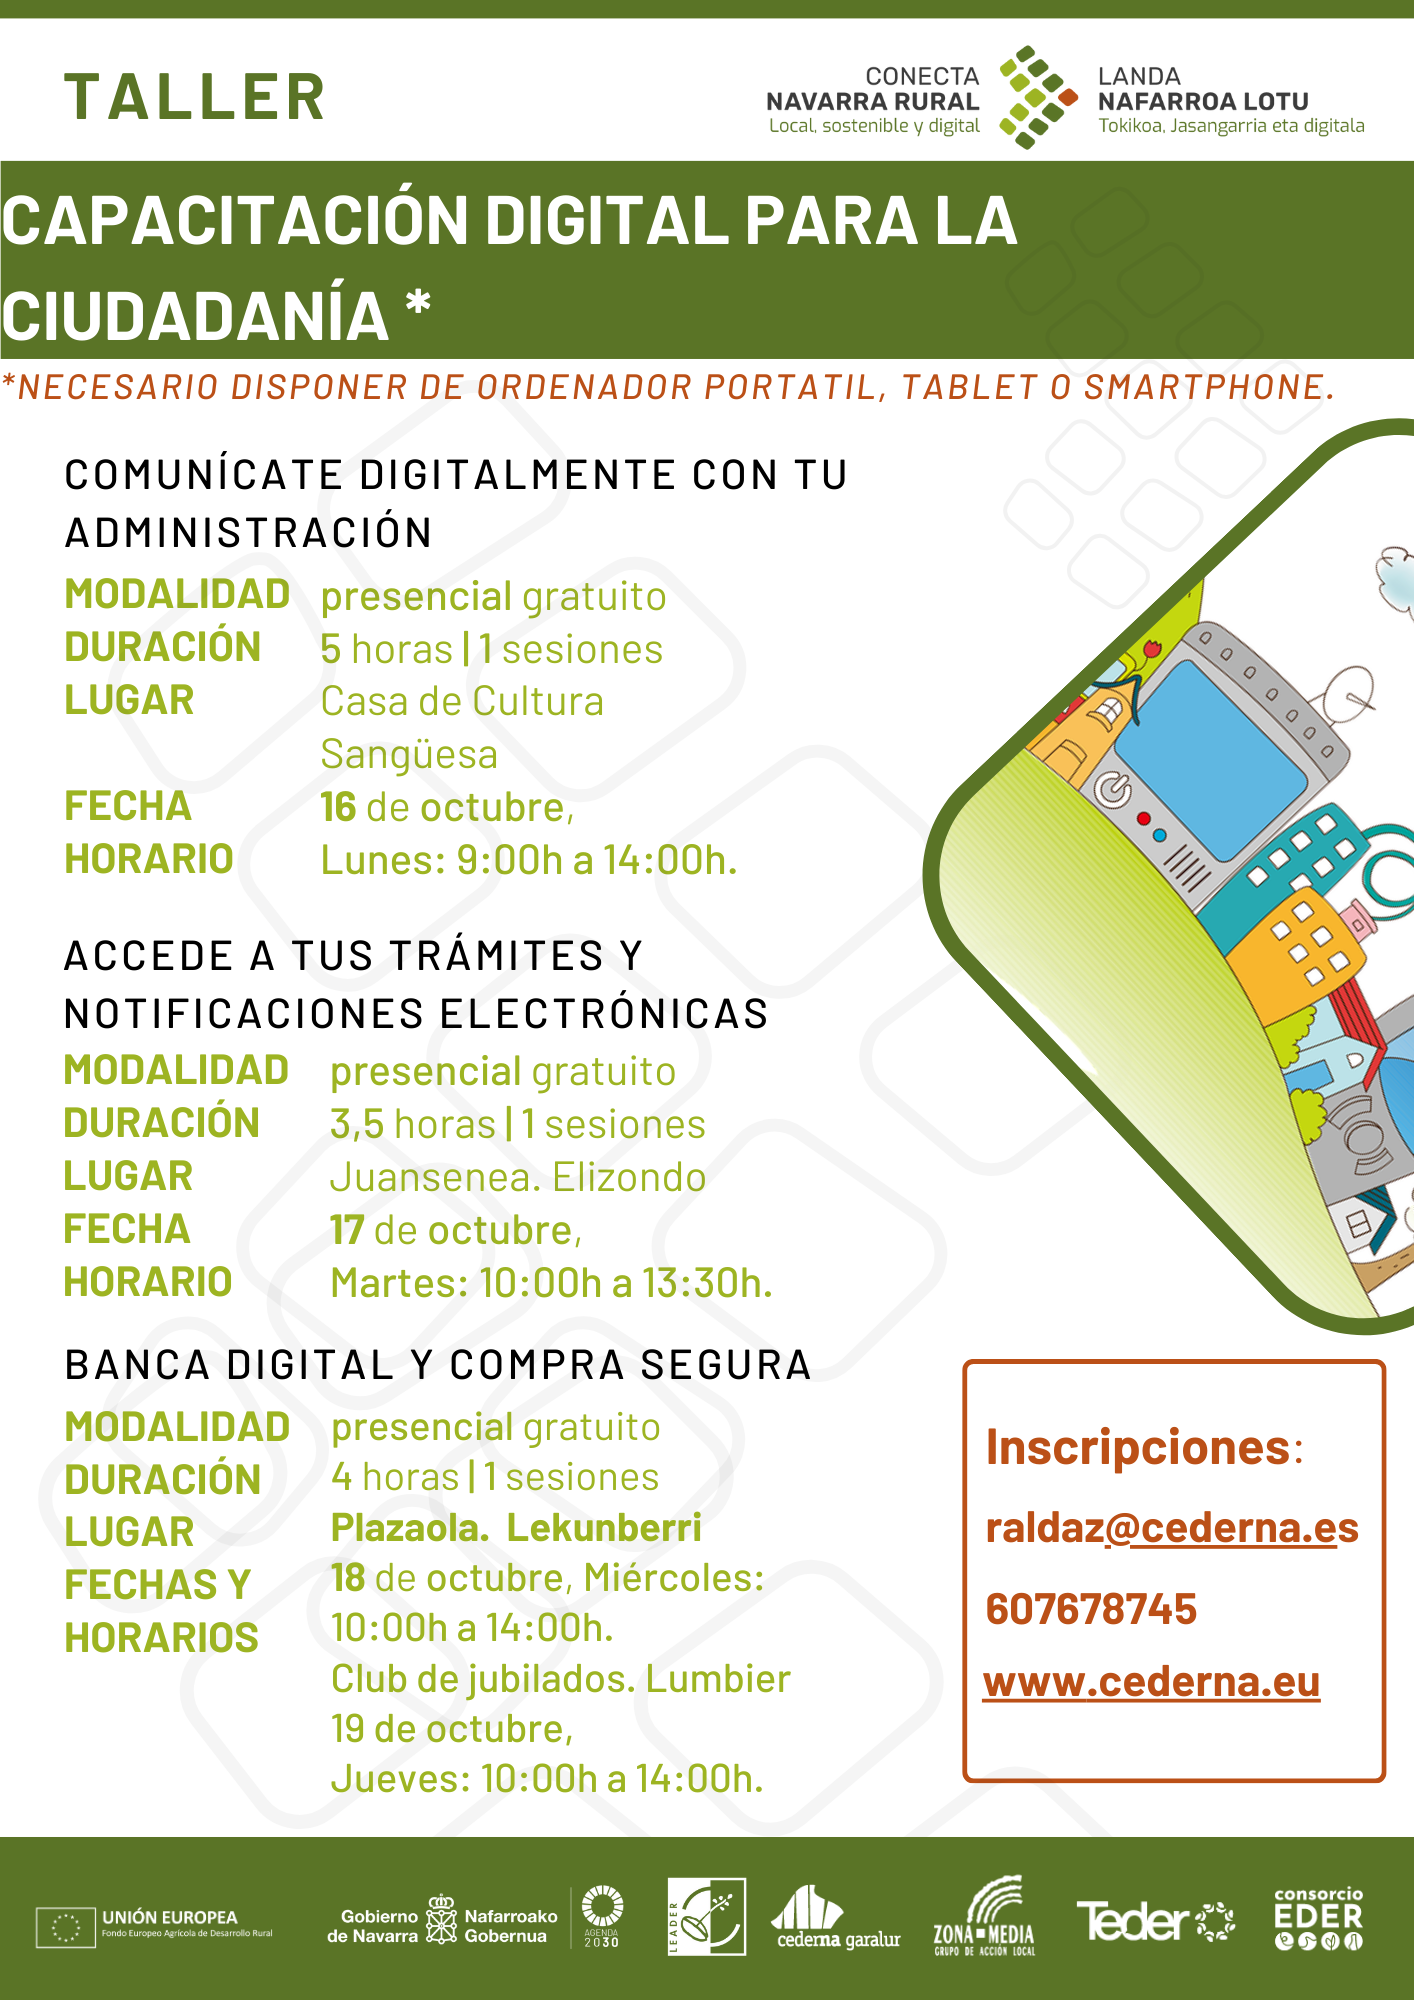 Cederna Garalur programa cuatro talleres digitales sobre banca electrónica y trámites administrativos online, dirigidos a la ciudadanía.